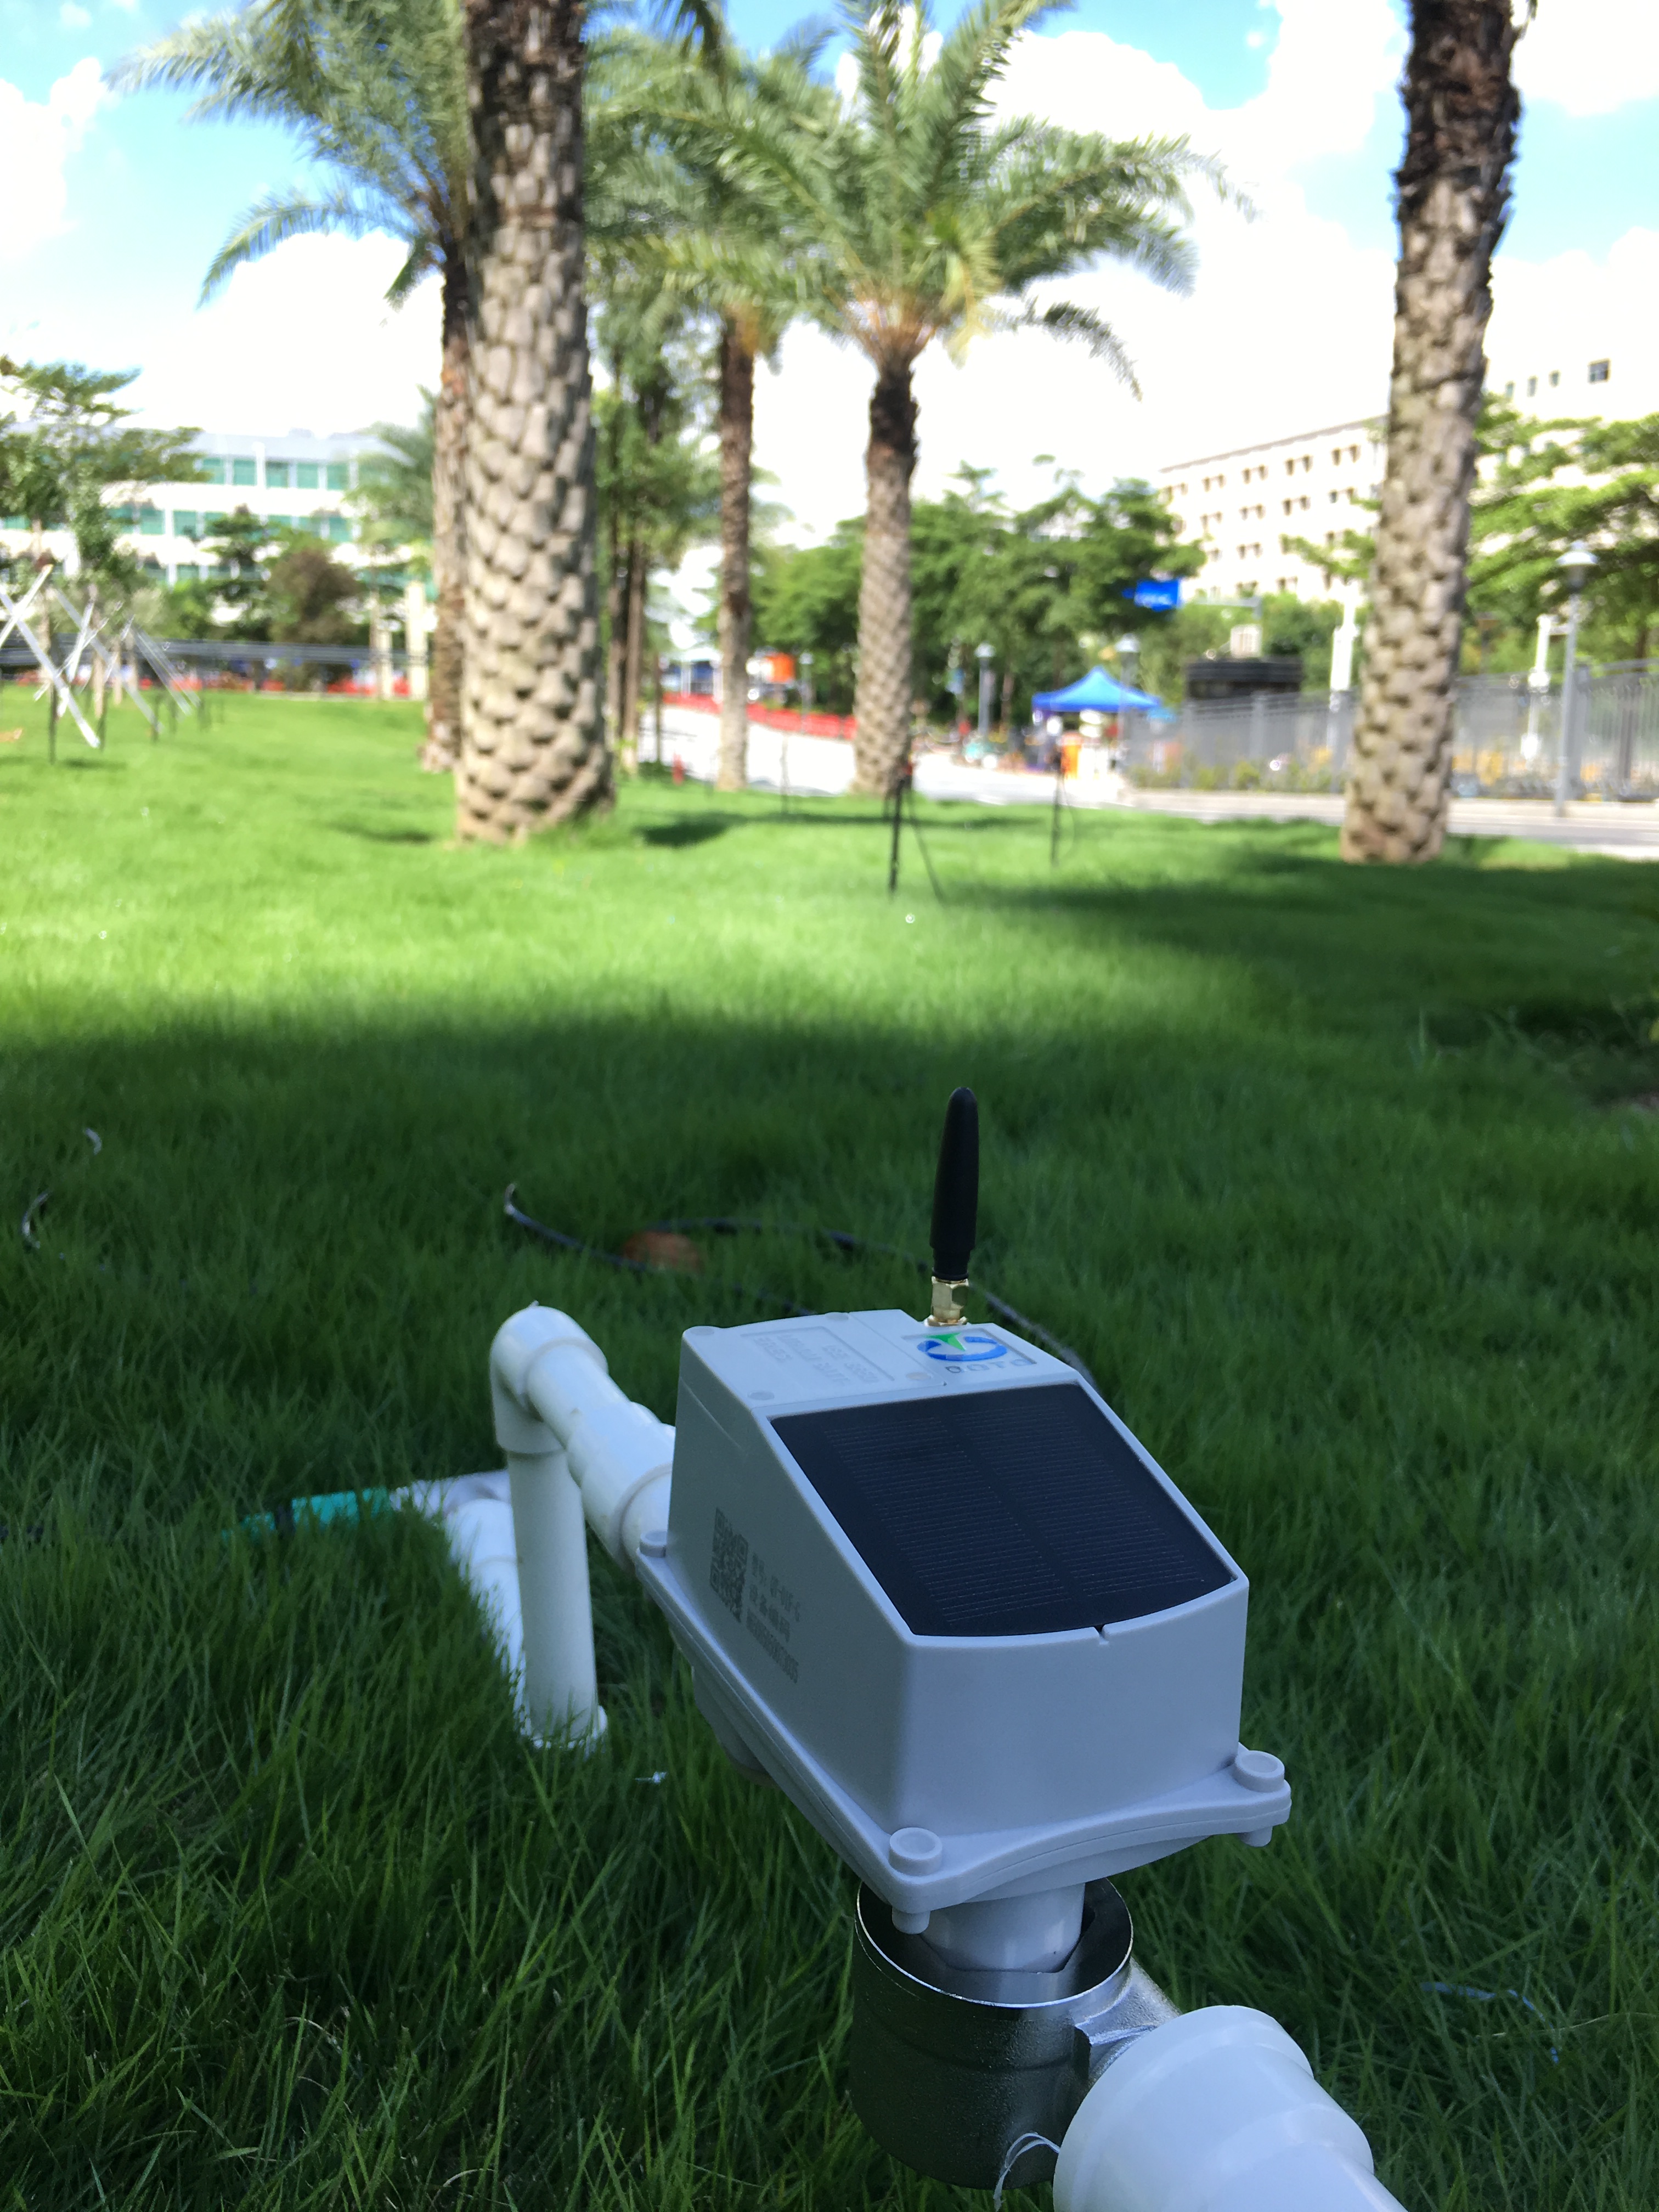 Temporizador de mangueira de jardim inteligente controlado por GSM com serviços de IoT totalmente gerenciados